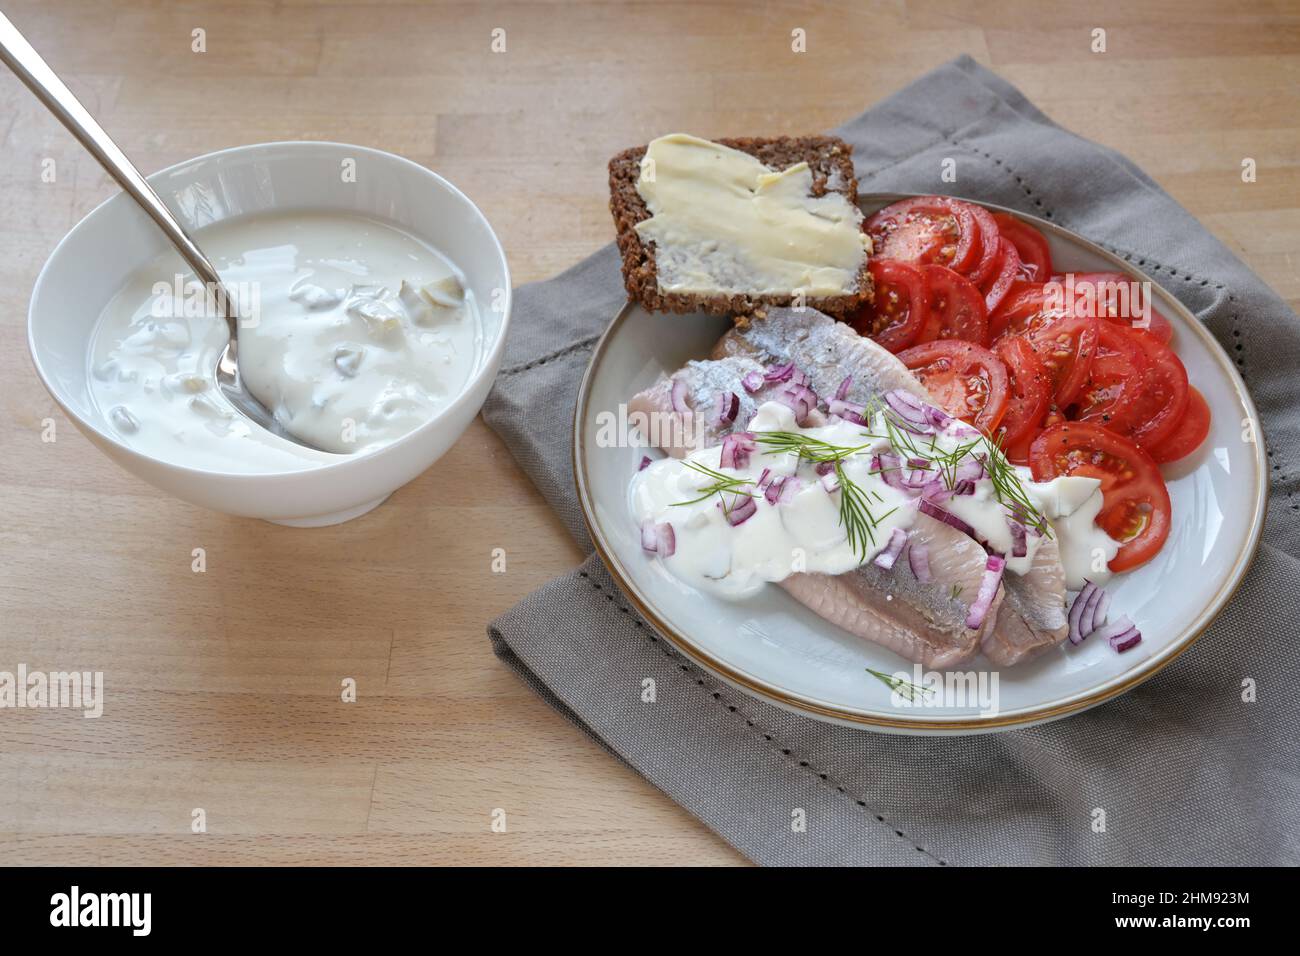 Filets de hareng salés avec tranches de tomate et pain complet brun sur une assiette et sauce à la crème aigre dans un bol, une serviette et une table en bois Banque D'Images